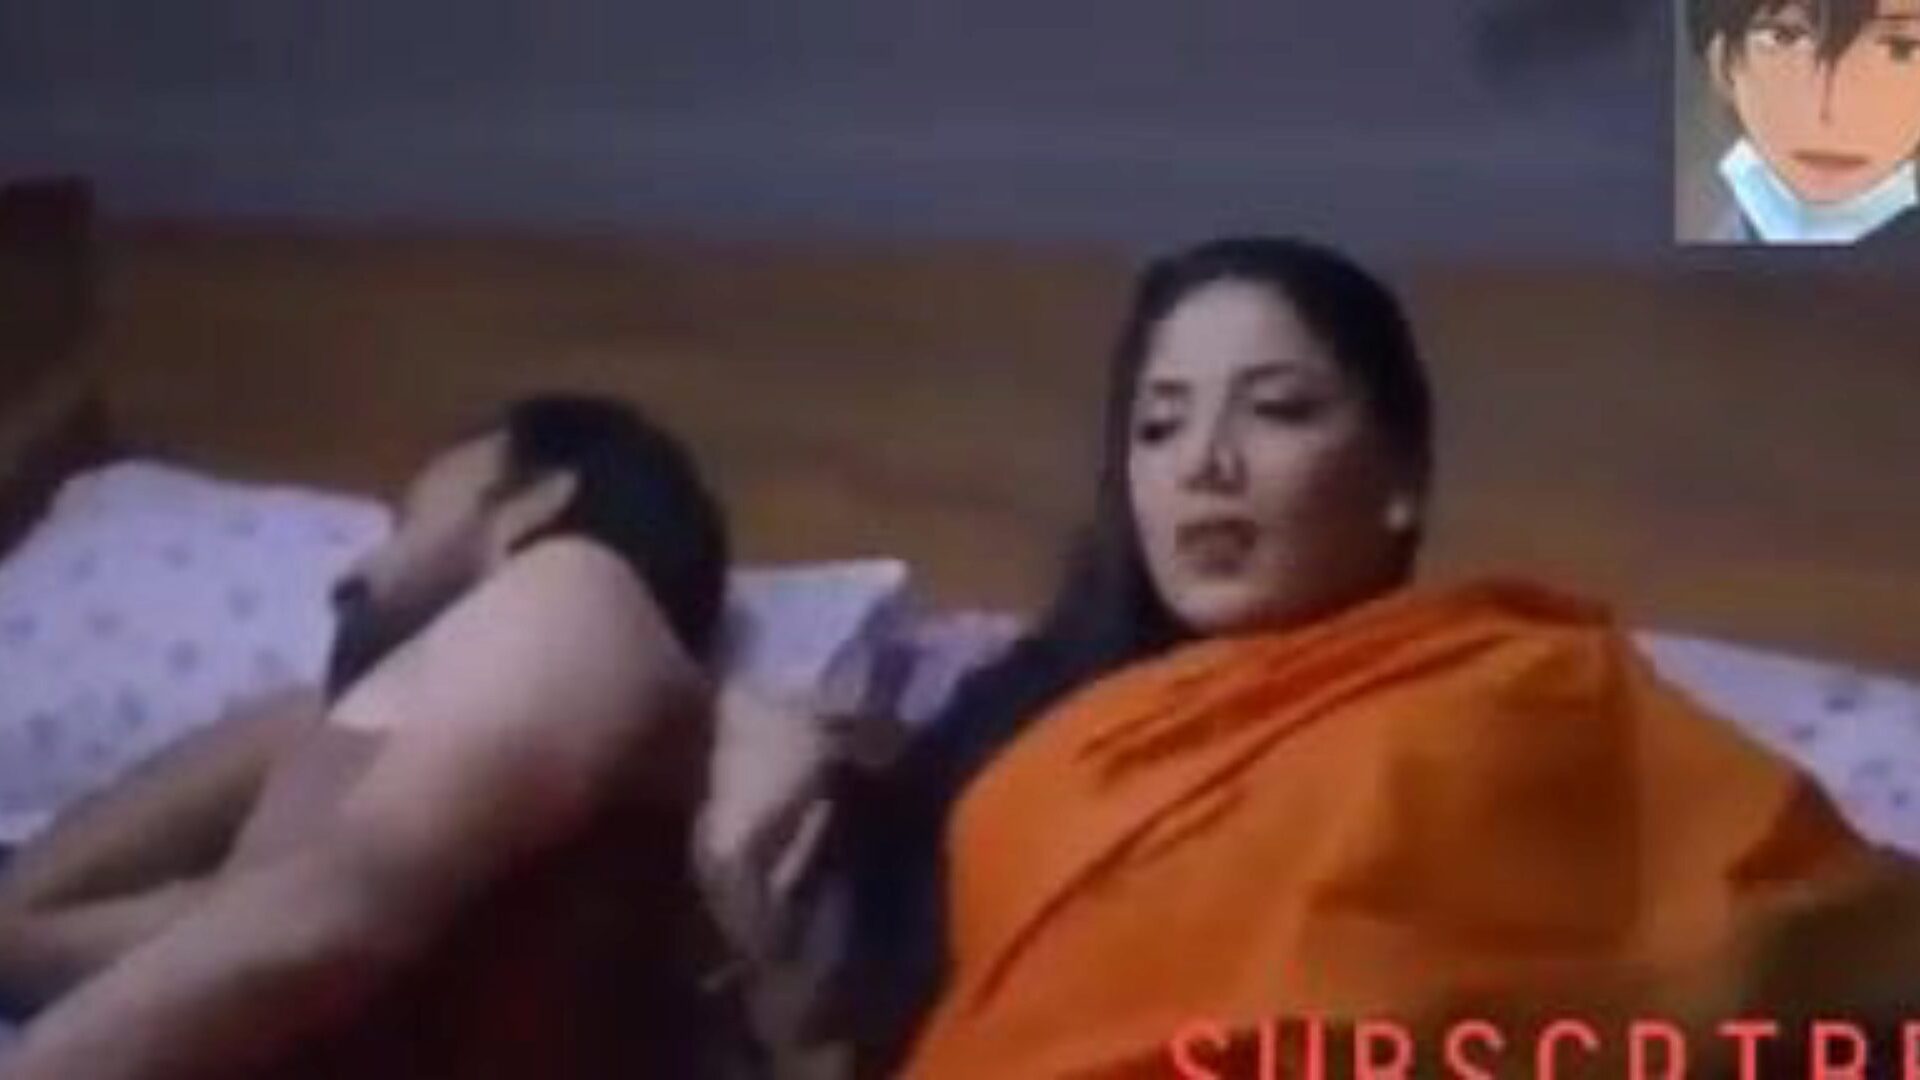 sex cu bhabhi: video porno indian gratuit b3 - xhamster urmărește sex cu clipul orgie bhabhi tube gratuit pe xhamster, cu cea mai mare colecție de tube indian bhabhi tube și scene video porno porno gratuit xnxx